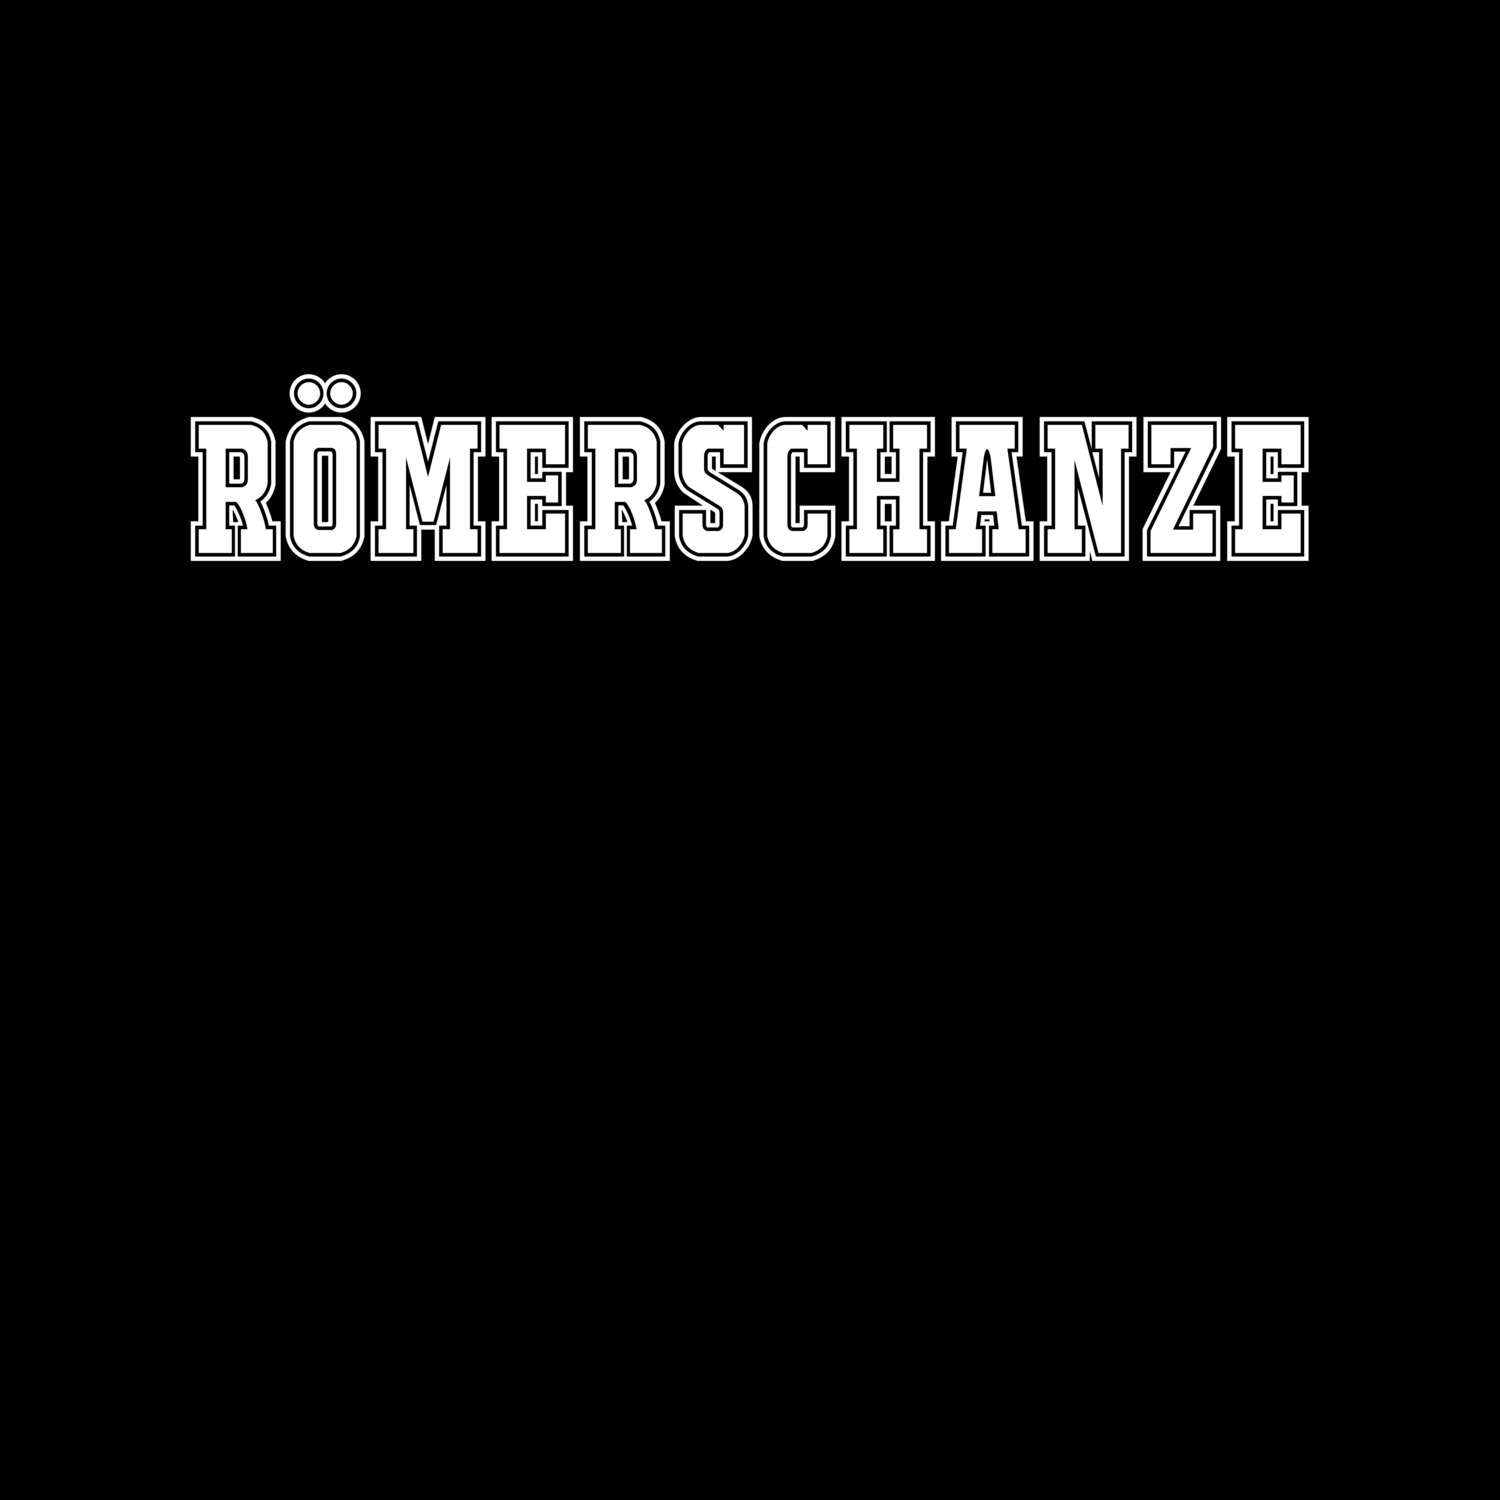 Römerschanze T-Shirt »Classic«